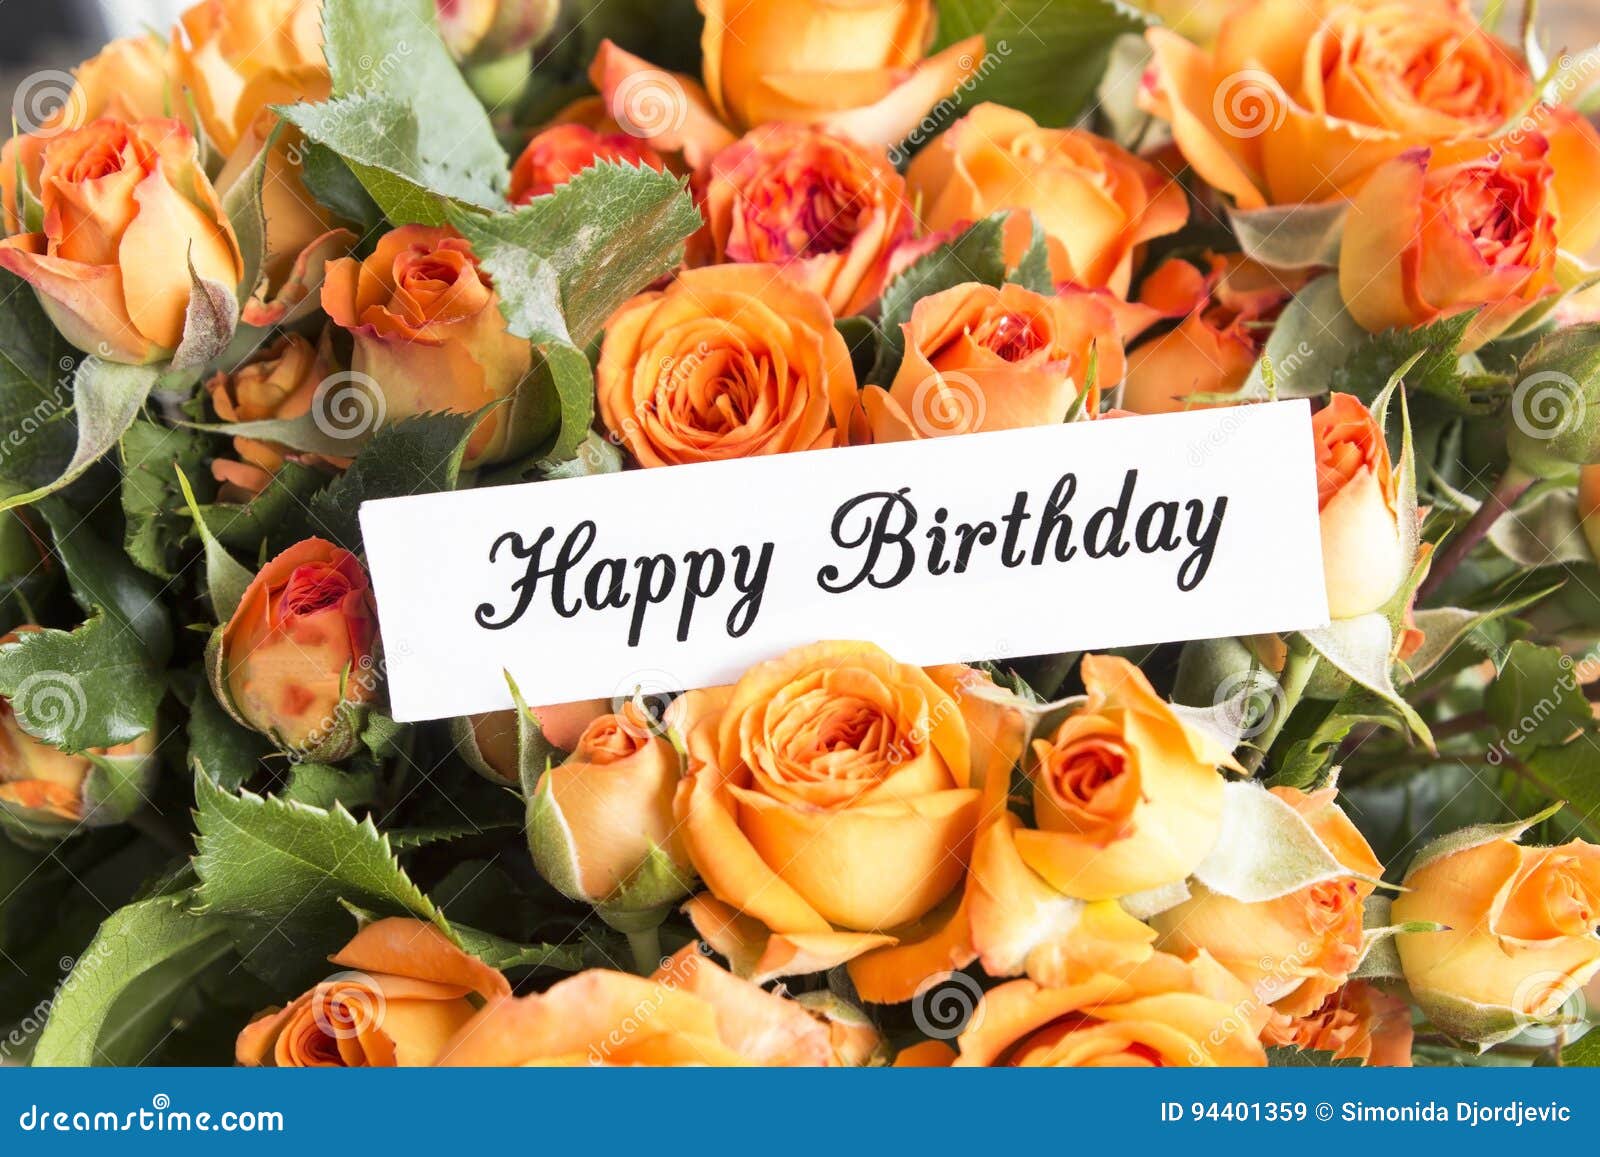 10,308 Happy Birthday Card Roses Stock Photos - Free & Royalty ...